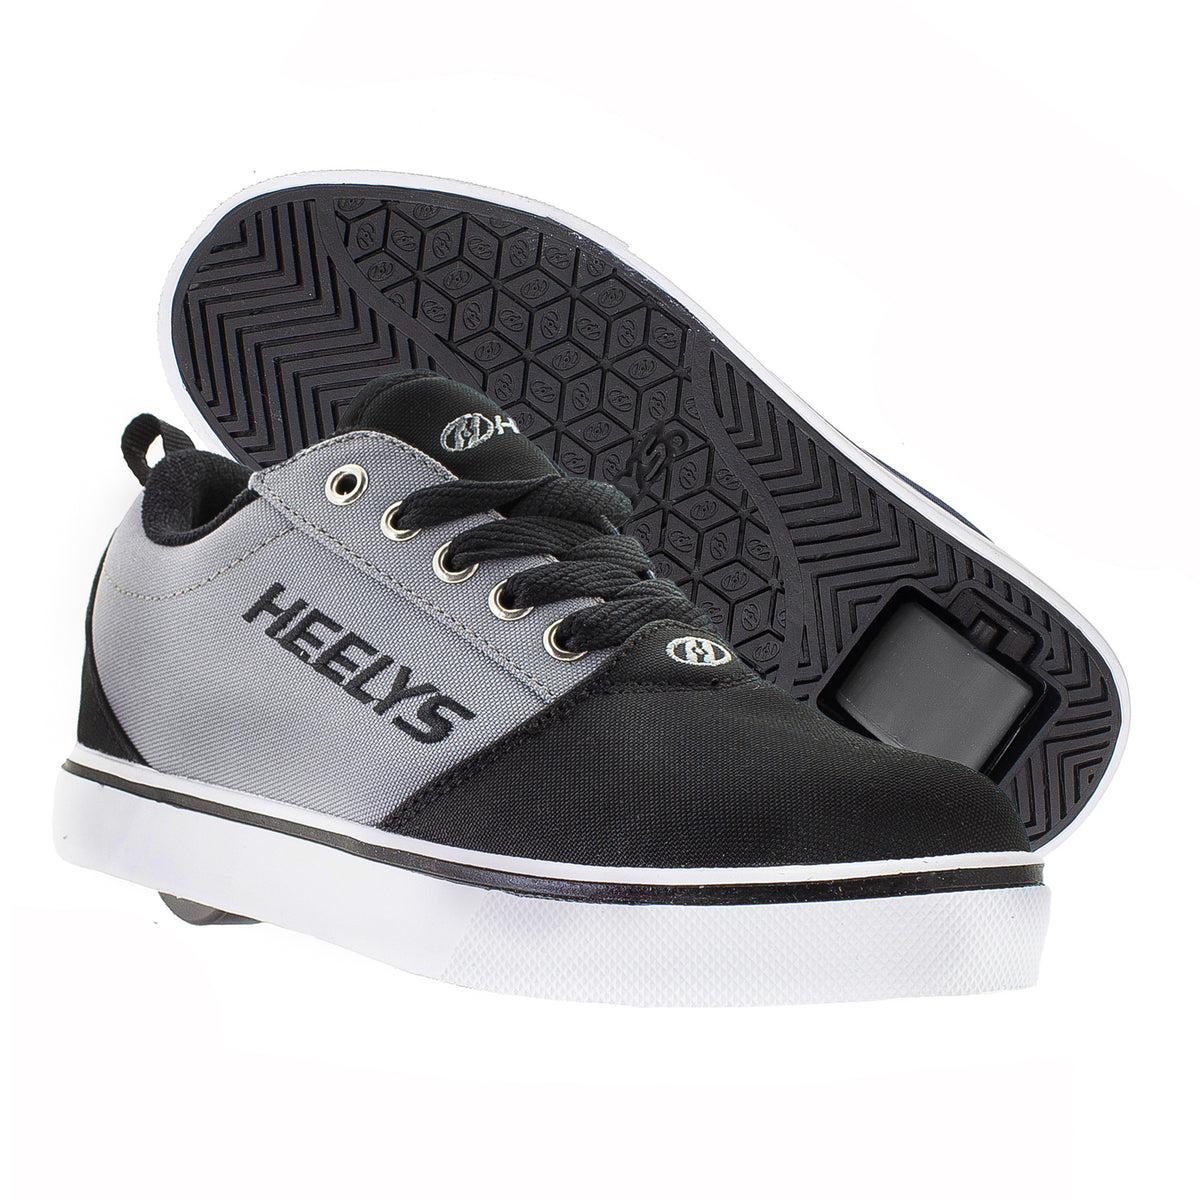 HEELYS Chaussure à roulette X CHUPA CHUPS Pro 20 (10353) Black